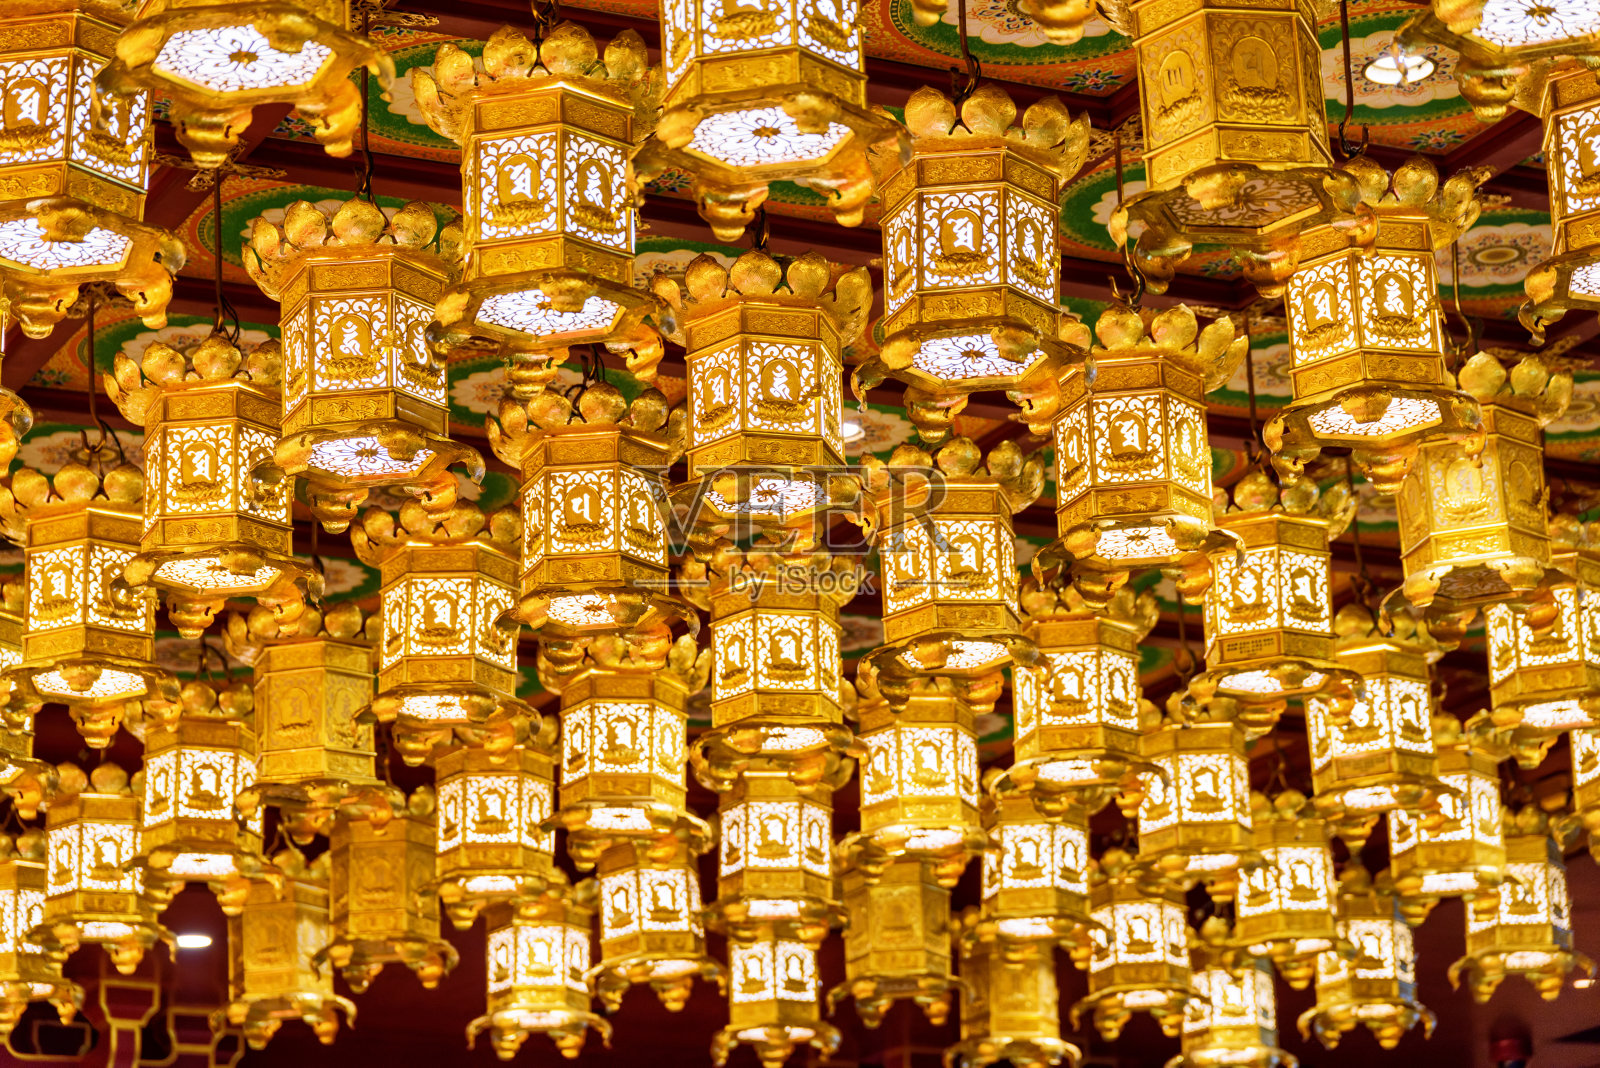 佛教寺庙里的金色天花板灯笼照片摄影图片